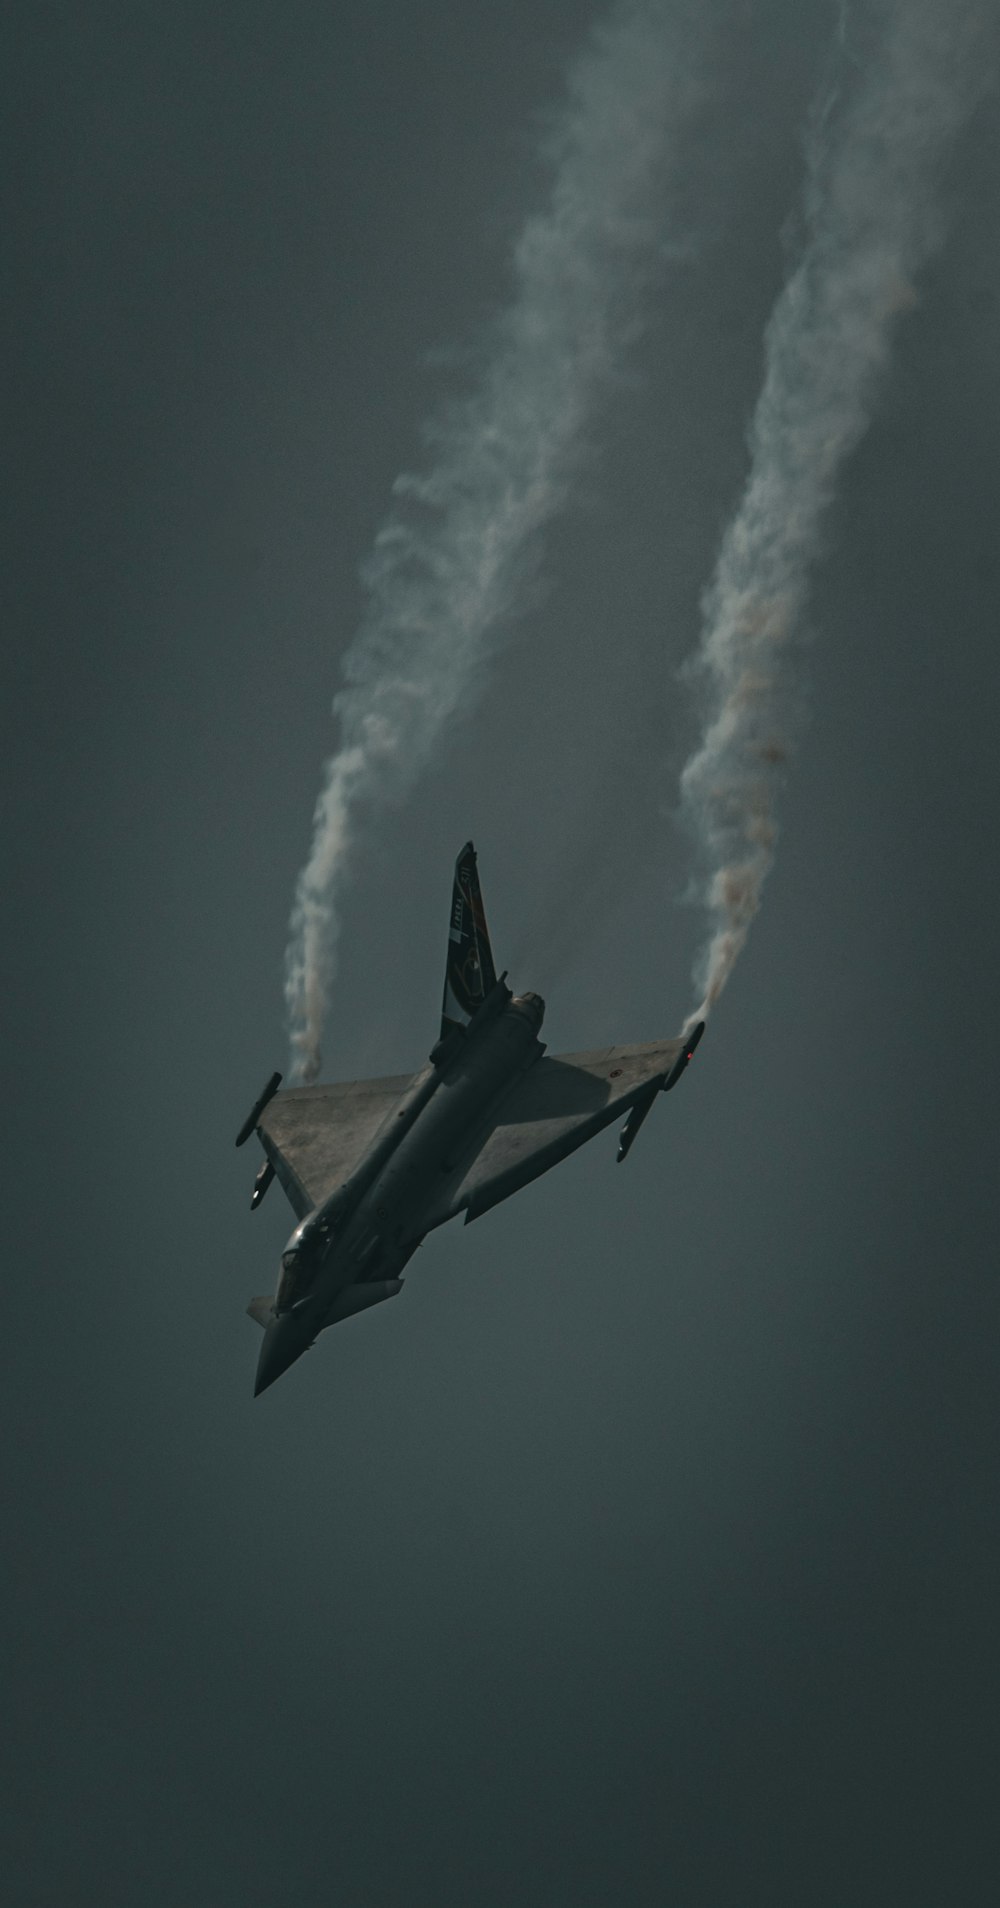 Un avión de combate volando a través de un cielo nublado